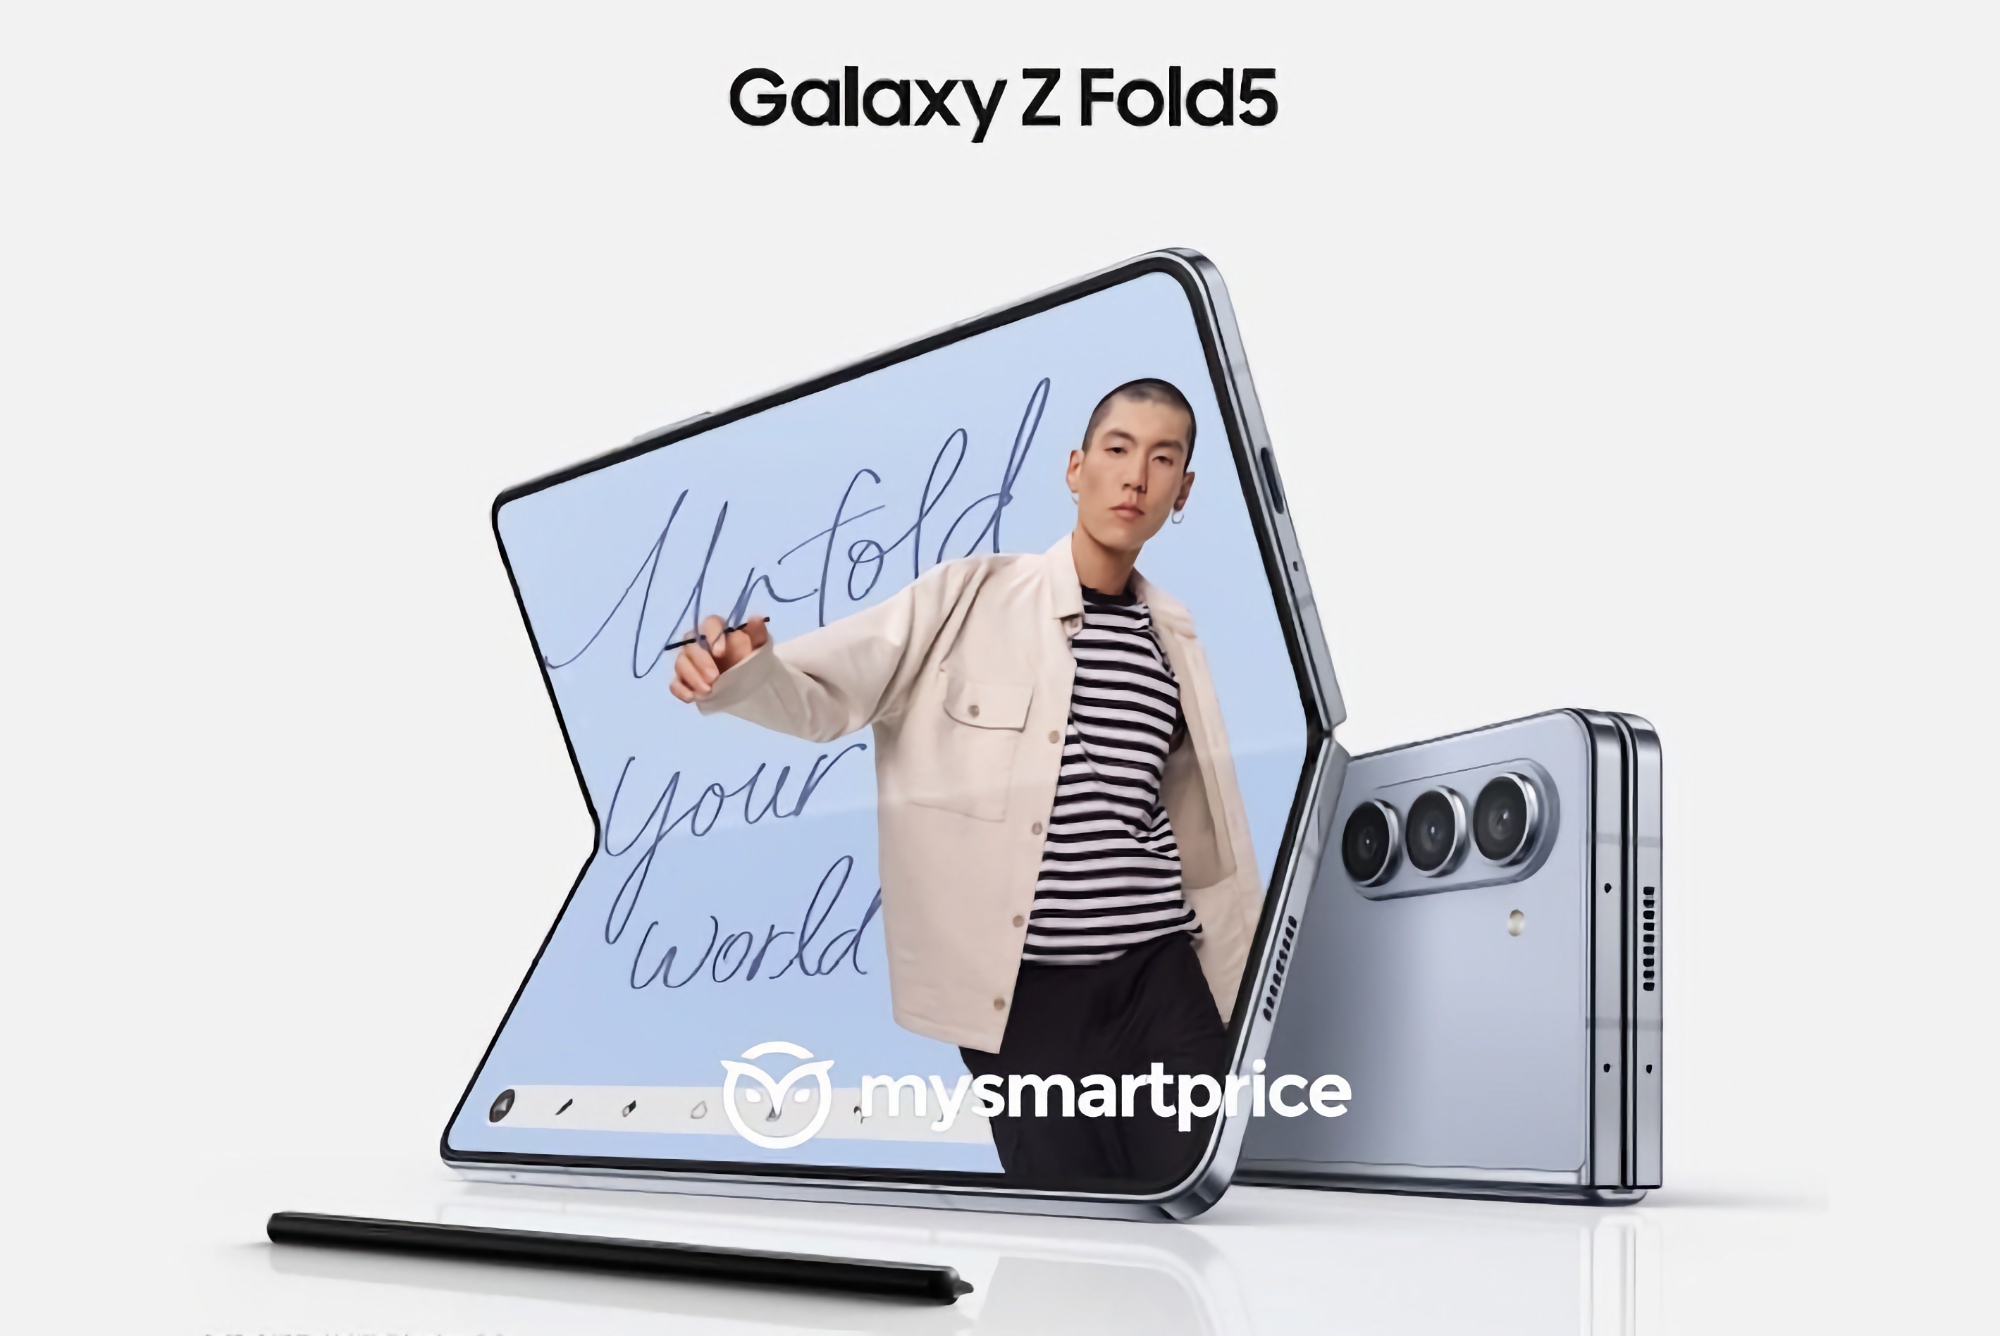 Más barato que el Samsung Galaxy Fold 4: inider revela cuánto costará el smartphone plegable Galaxy Fold 5